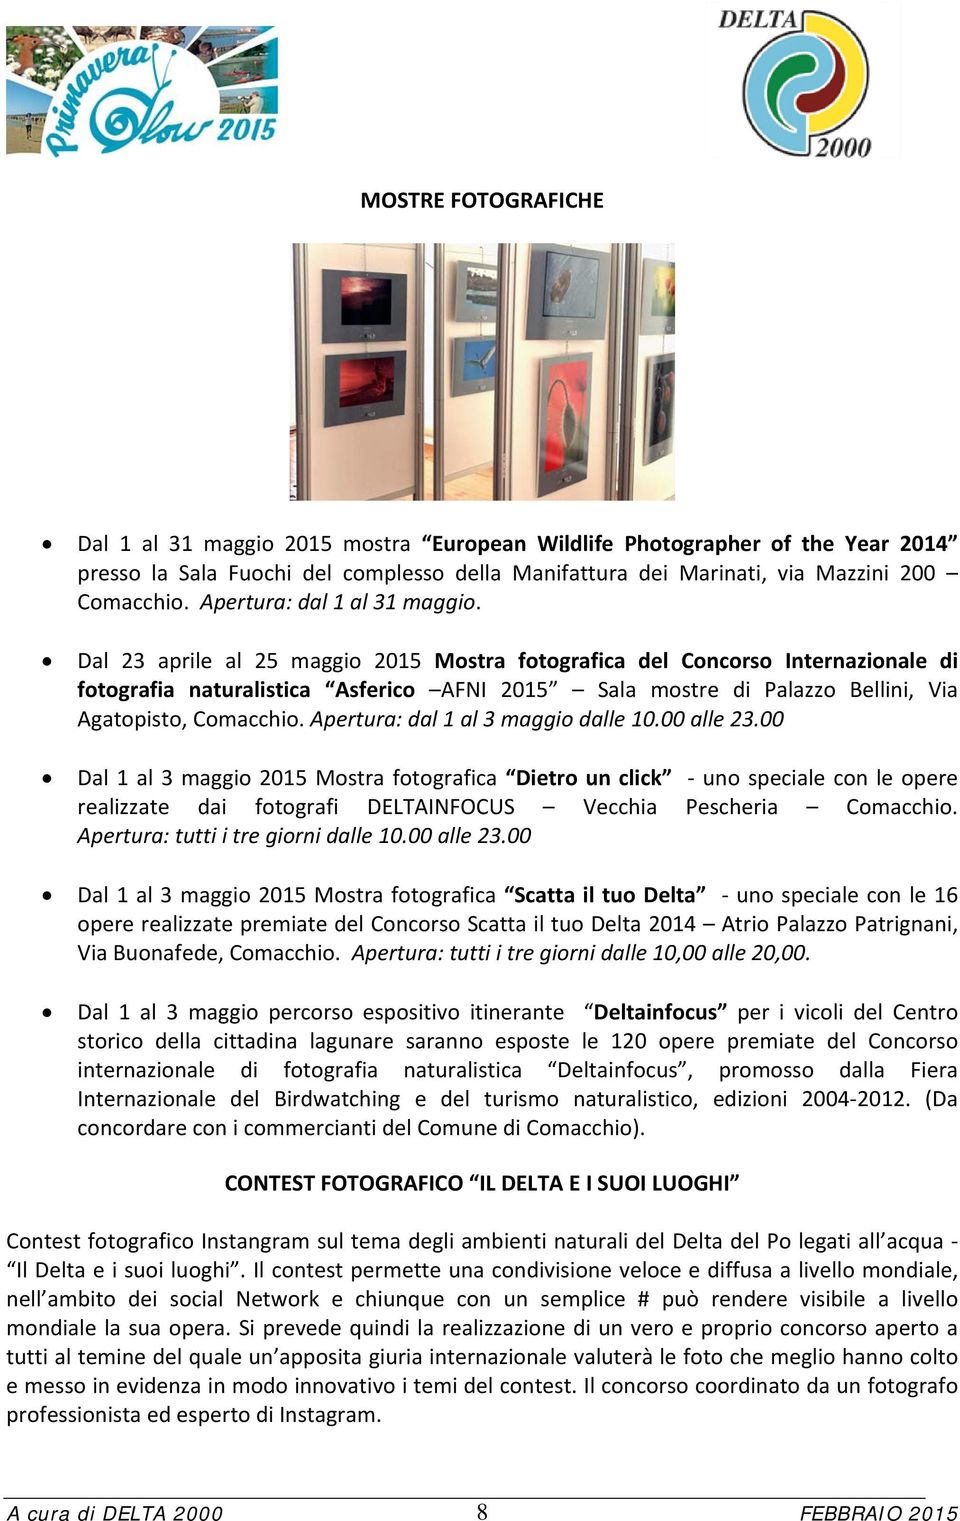 Dal 23 aprile al 25 maggio 2015 Mostra fotografica del Concorso Internazionale di fotografia naturalistica Asferico AFNI 2015 Sala mostre di Palazzo Bellini, Via Agatopisto, Comacchio.